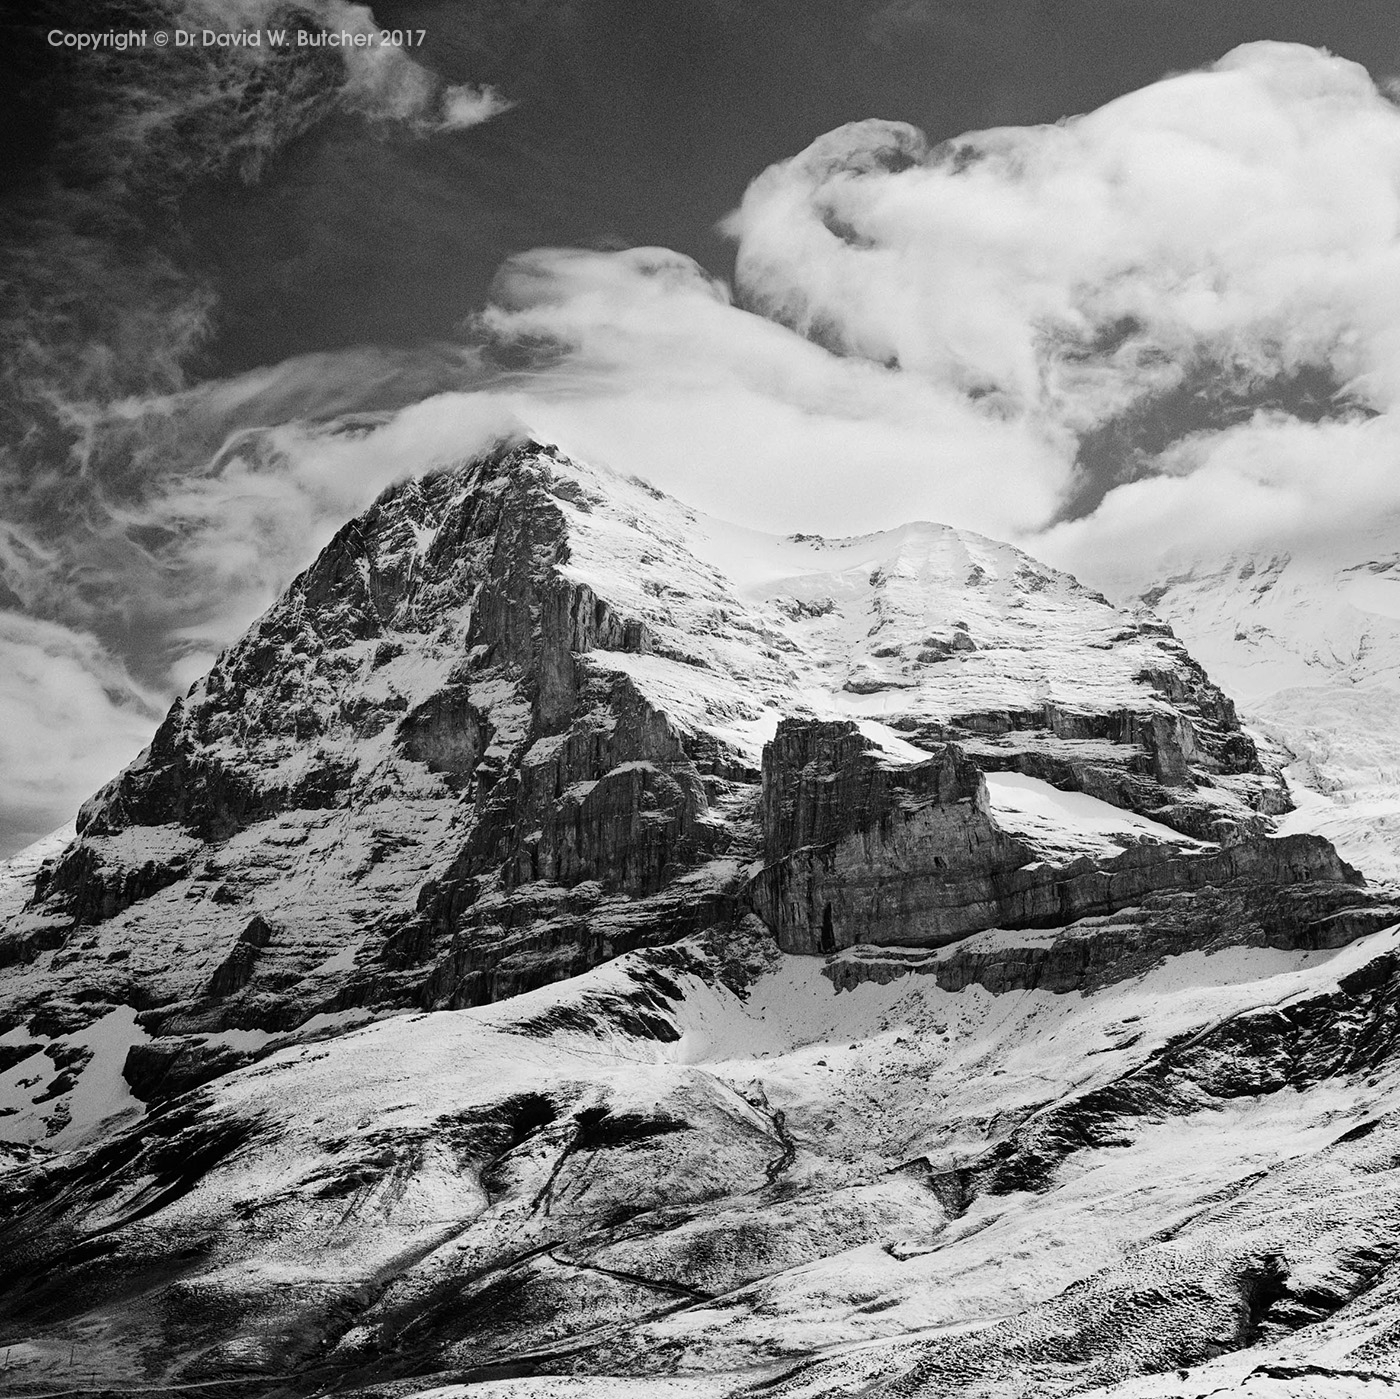 Wengen, Eiger and Clouds, Switzerland - Dave Butcher